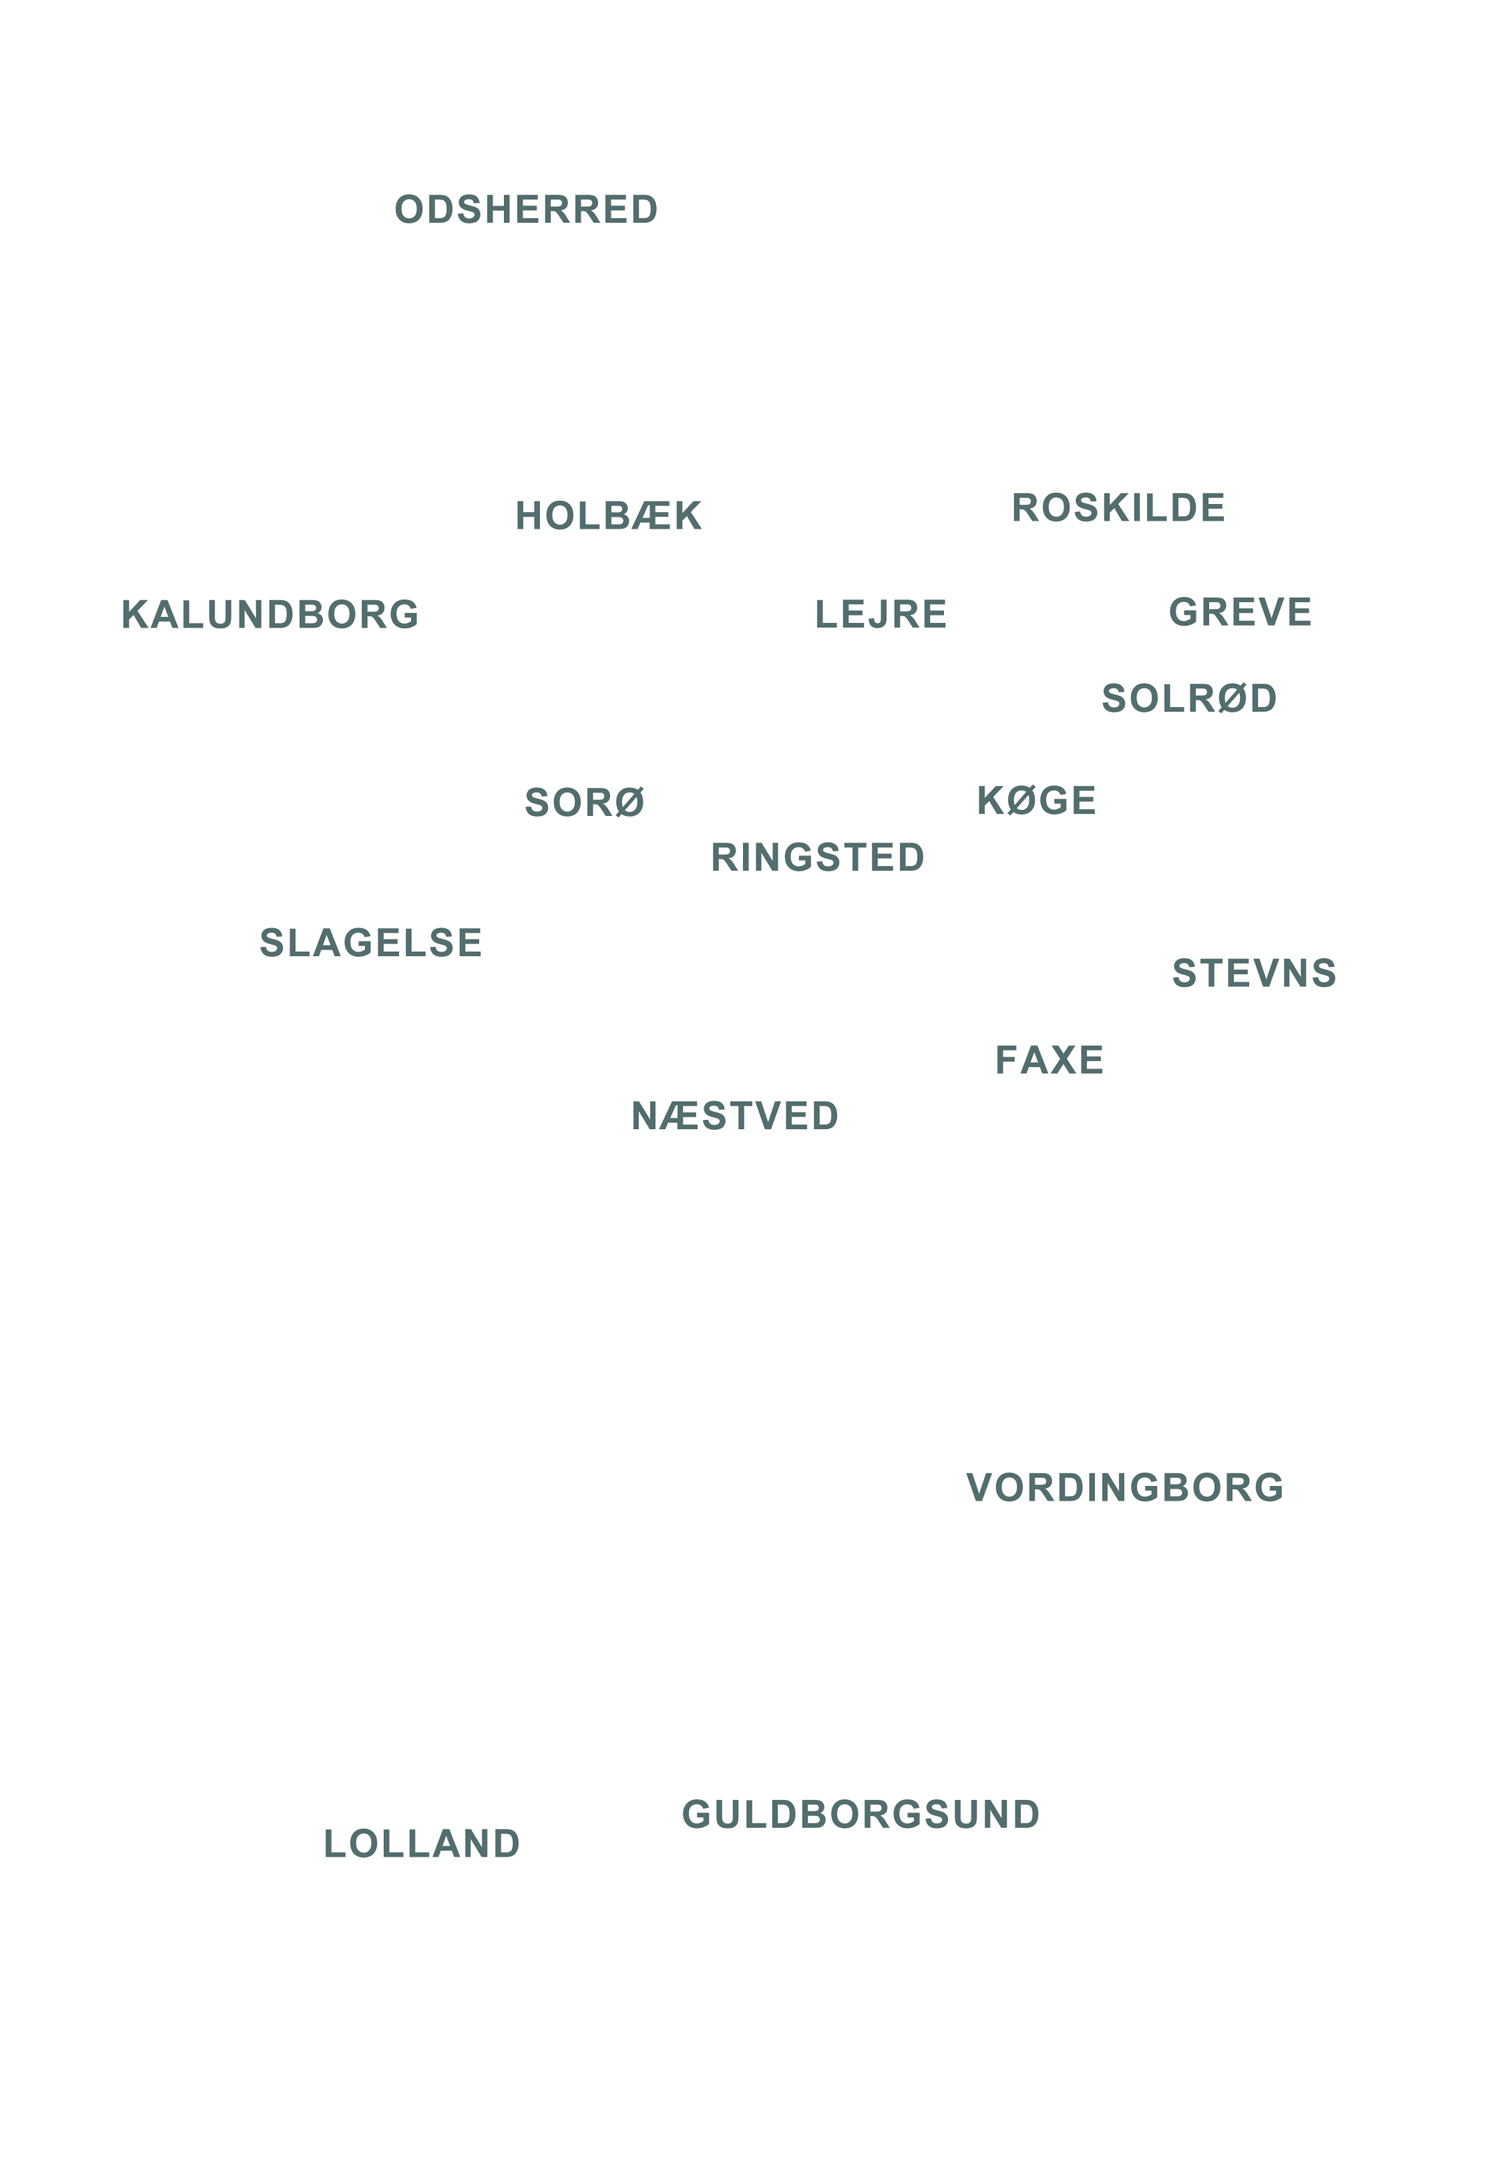 De 17 kommuner i Region Sjælland